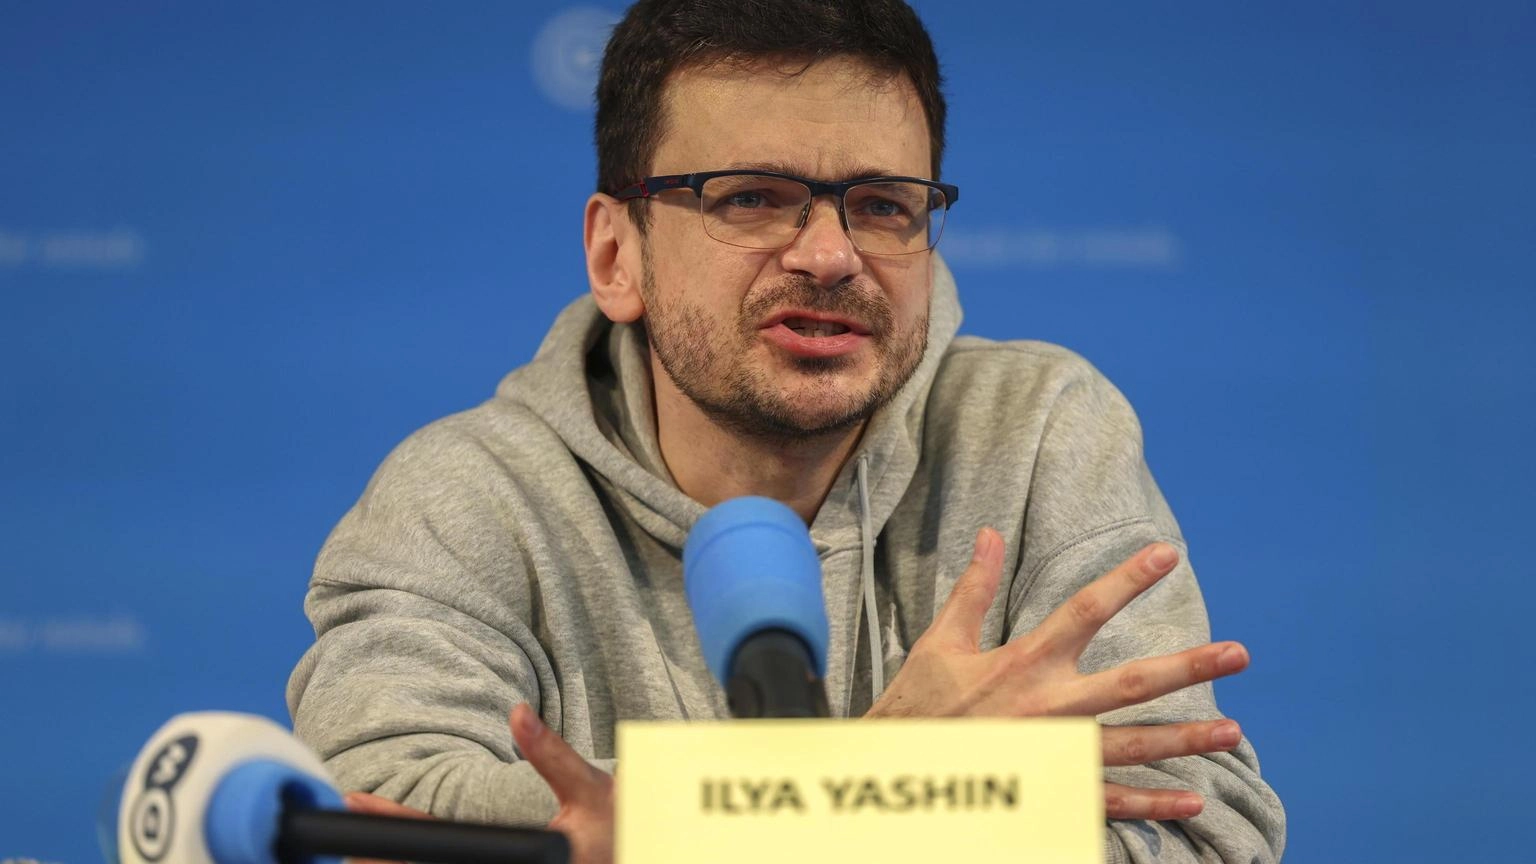 Yashin, 'per l'Fsb se torno in Russia finirò come Navalny'